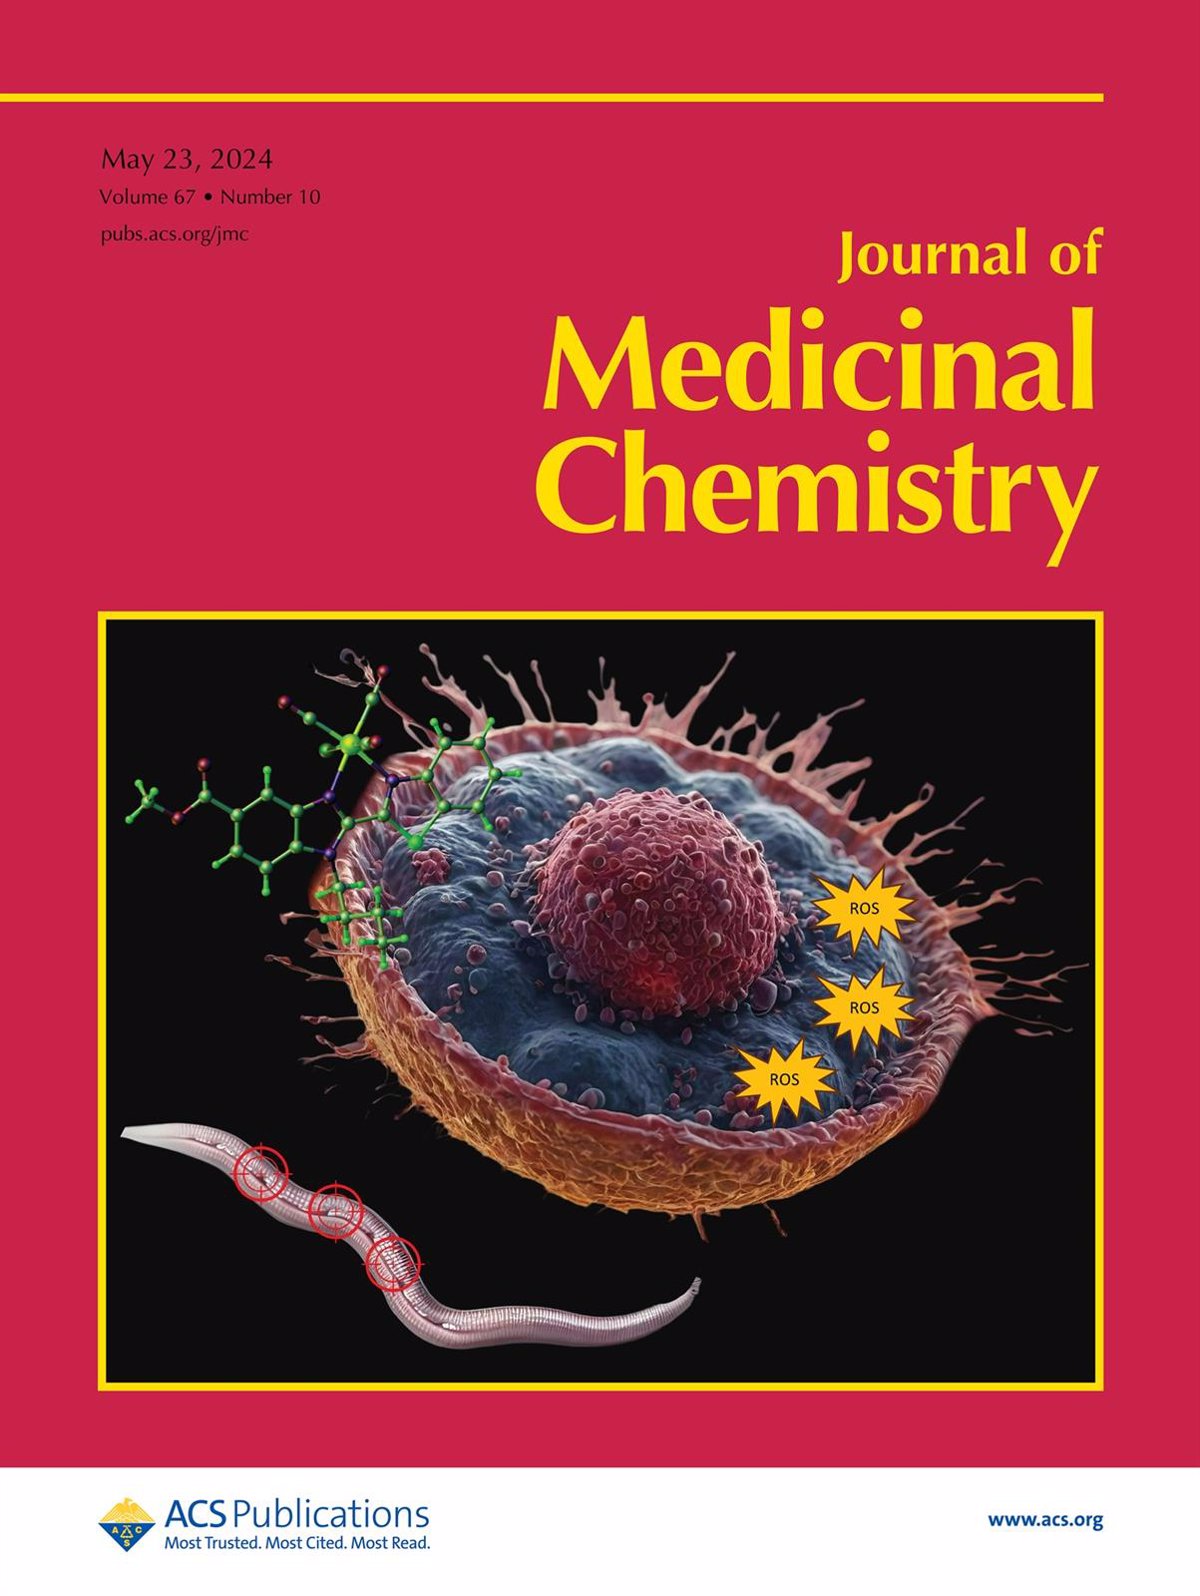 La UMU logra la portada de Medicinal Chemistry con el descubrimiento de nuevos agentes que matan las células tumorales